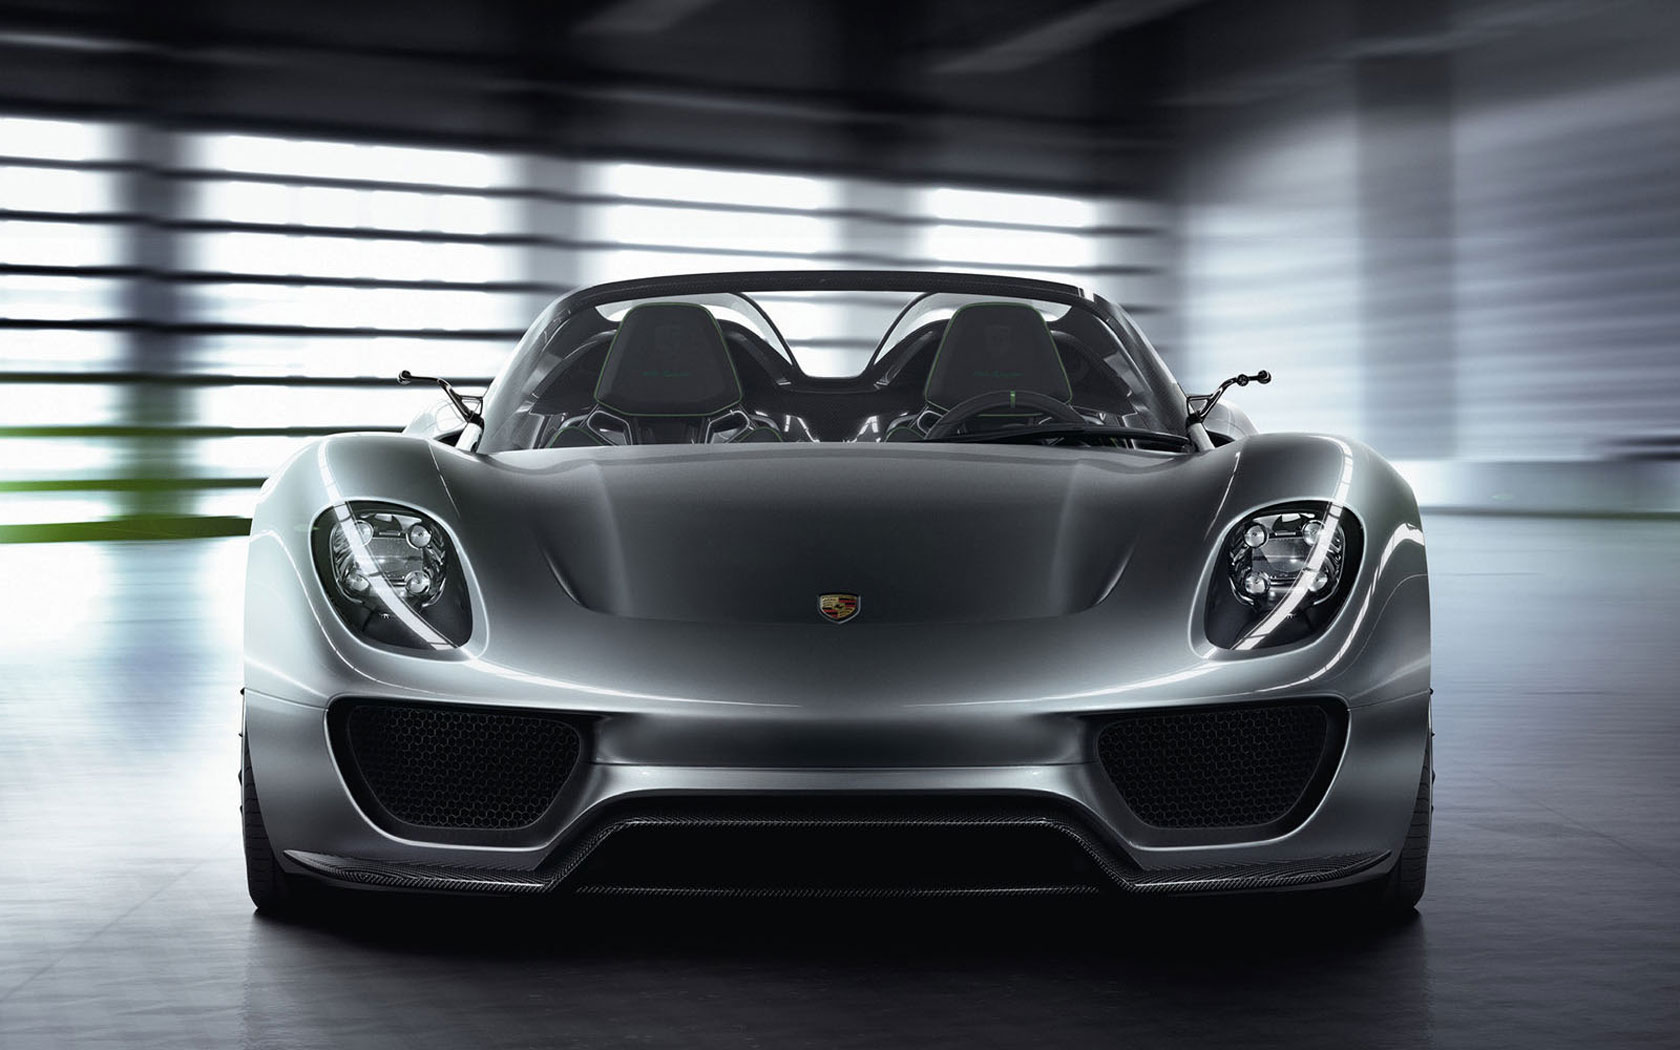  Porsche 918 Spyder Concept 